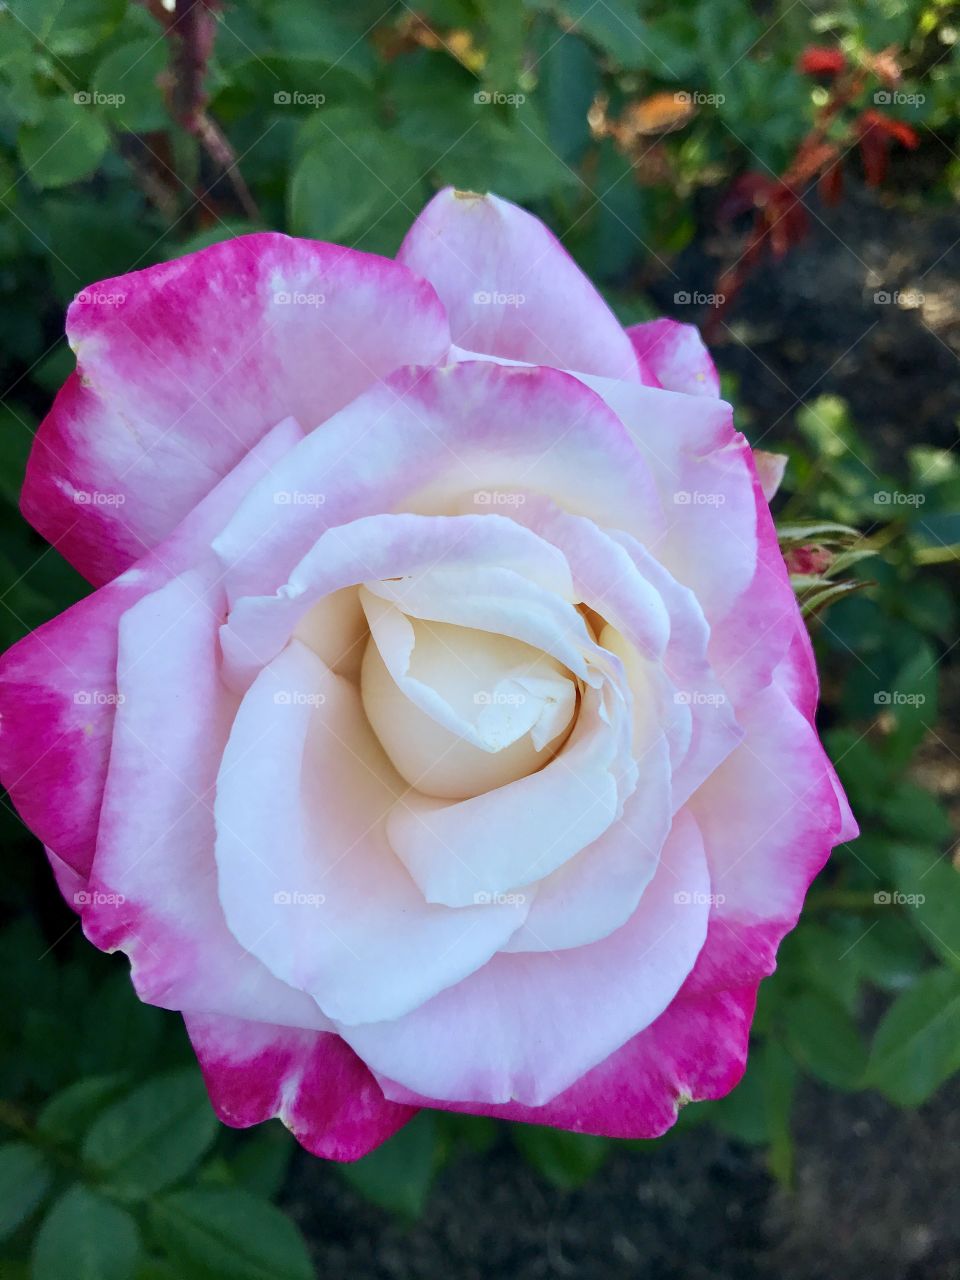 
Romantic rose 